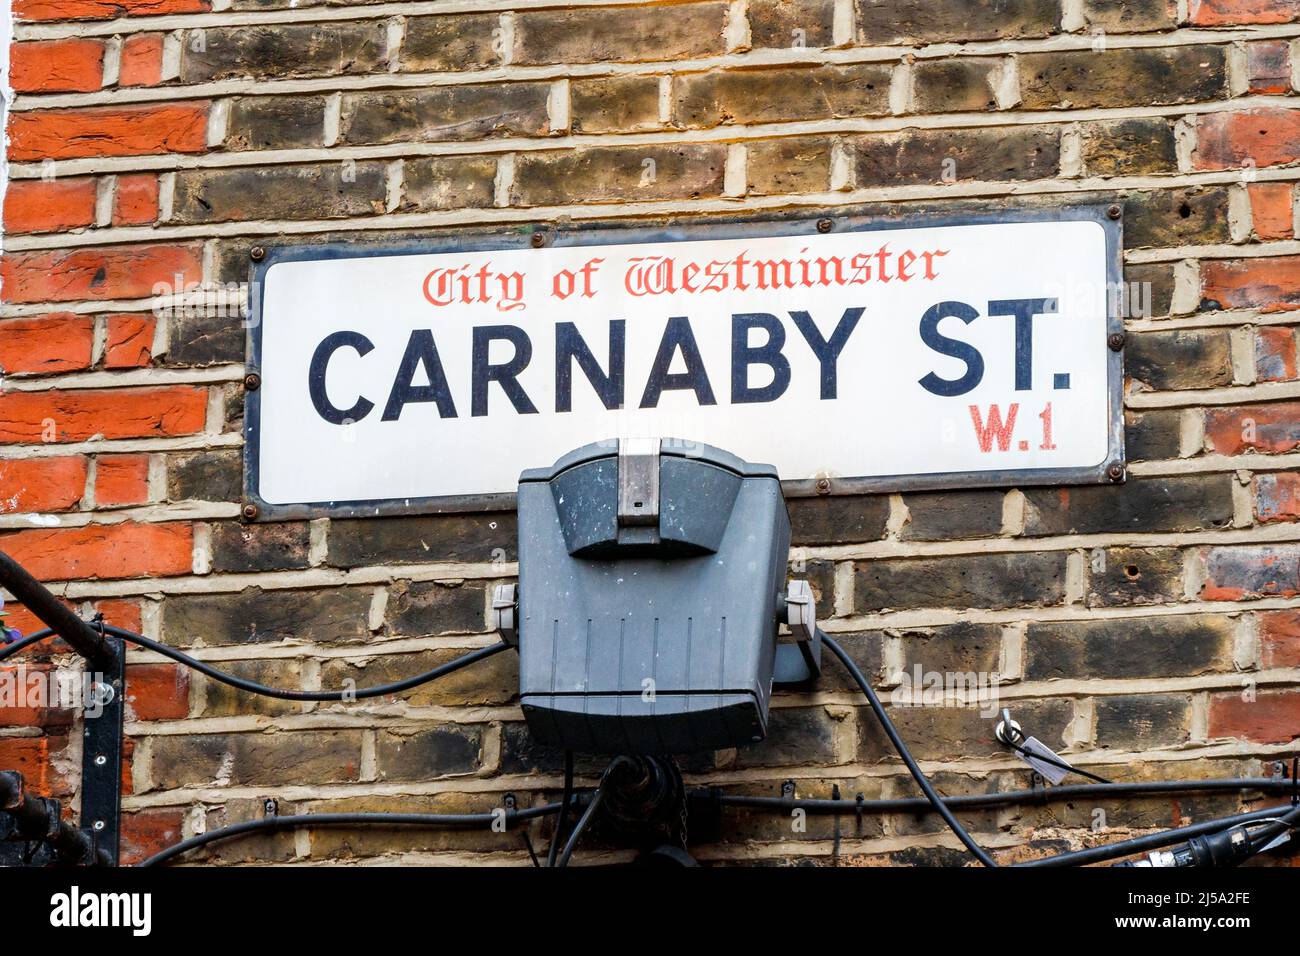 Rue de Carnaby Street, zone piétonne de Soho, où se trouvent des boutiques de mode et de mode de vie ainsi que des boutiques indépendantes, Londres, Royaume-Uni Banque D'Images